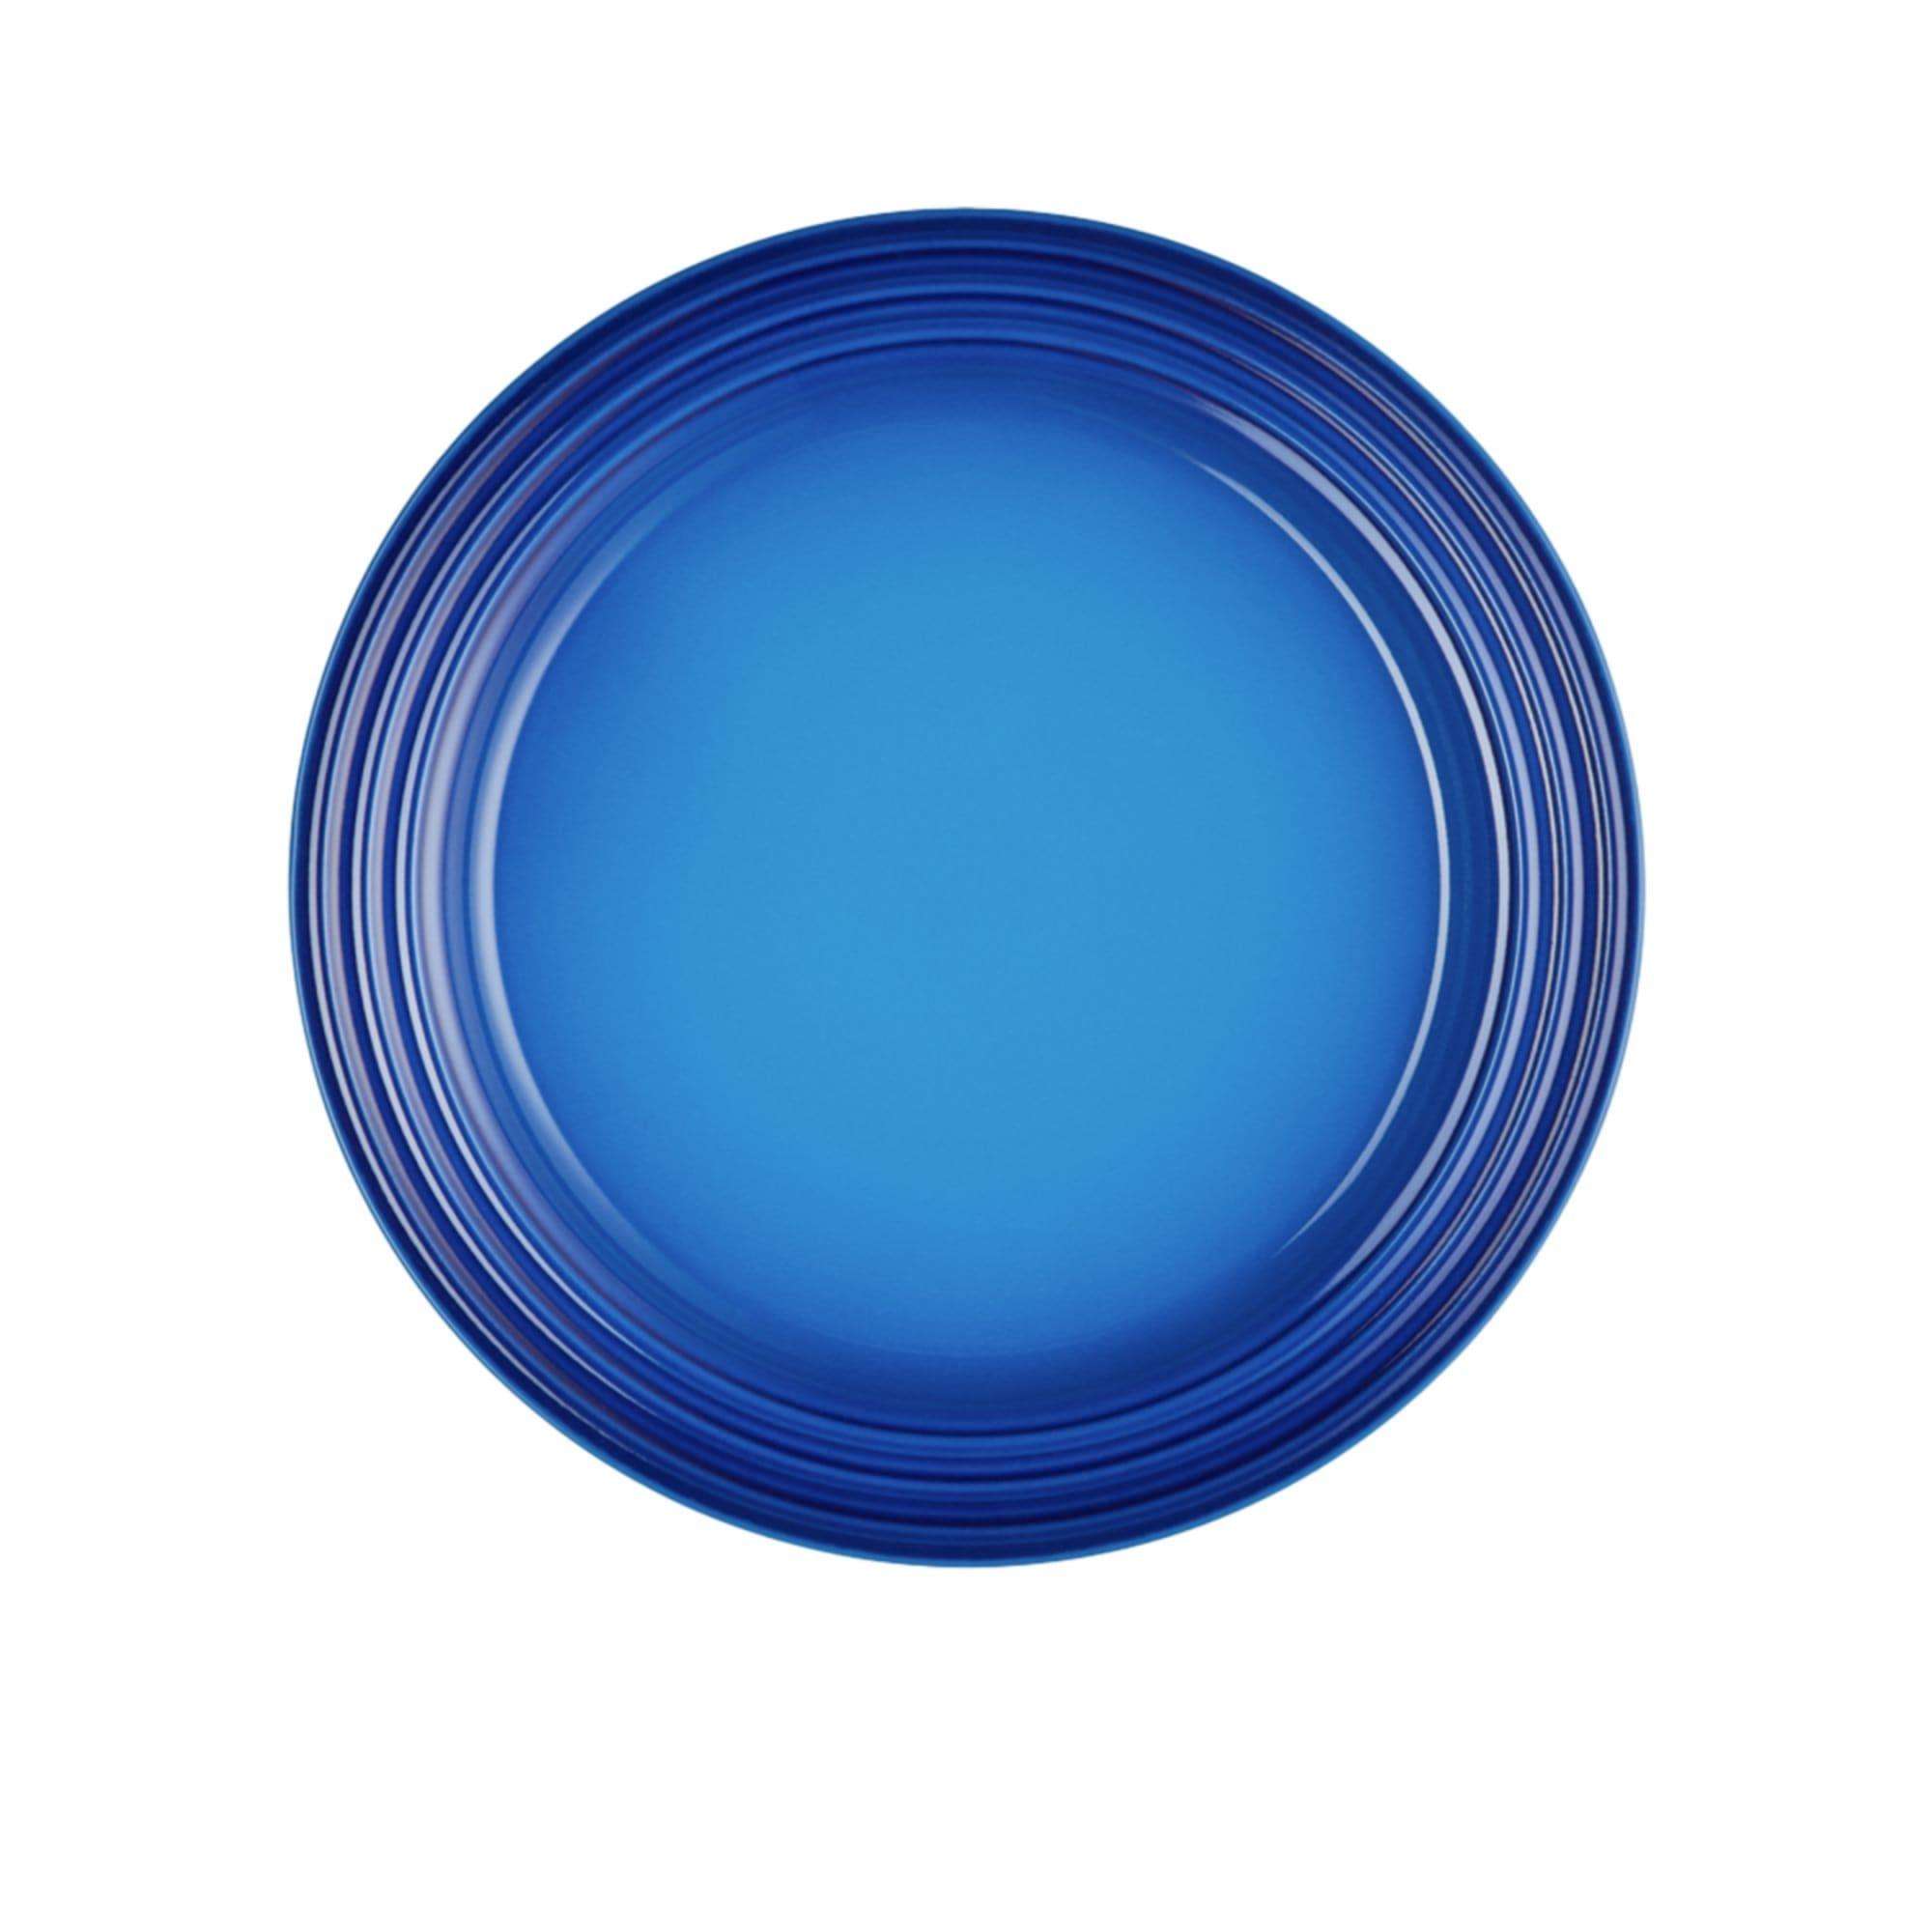 Le Creuset Stoneware Salad Plate 22cm Azure Blue Image 1